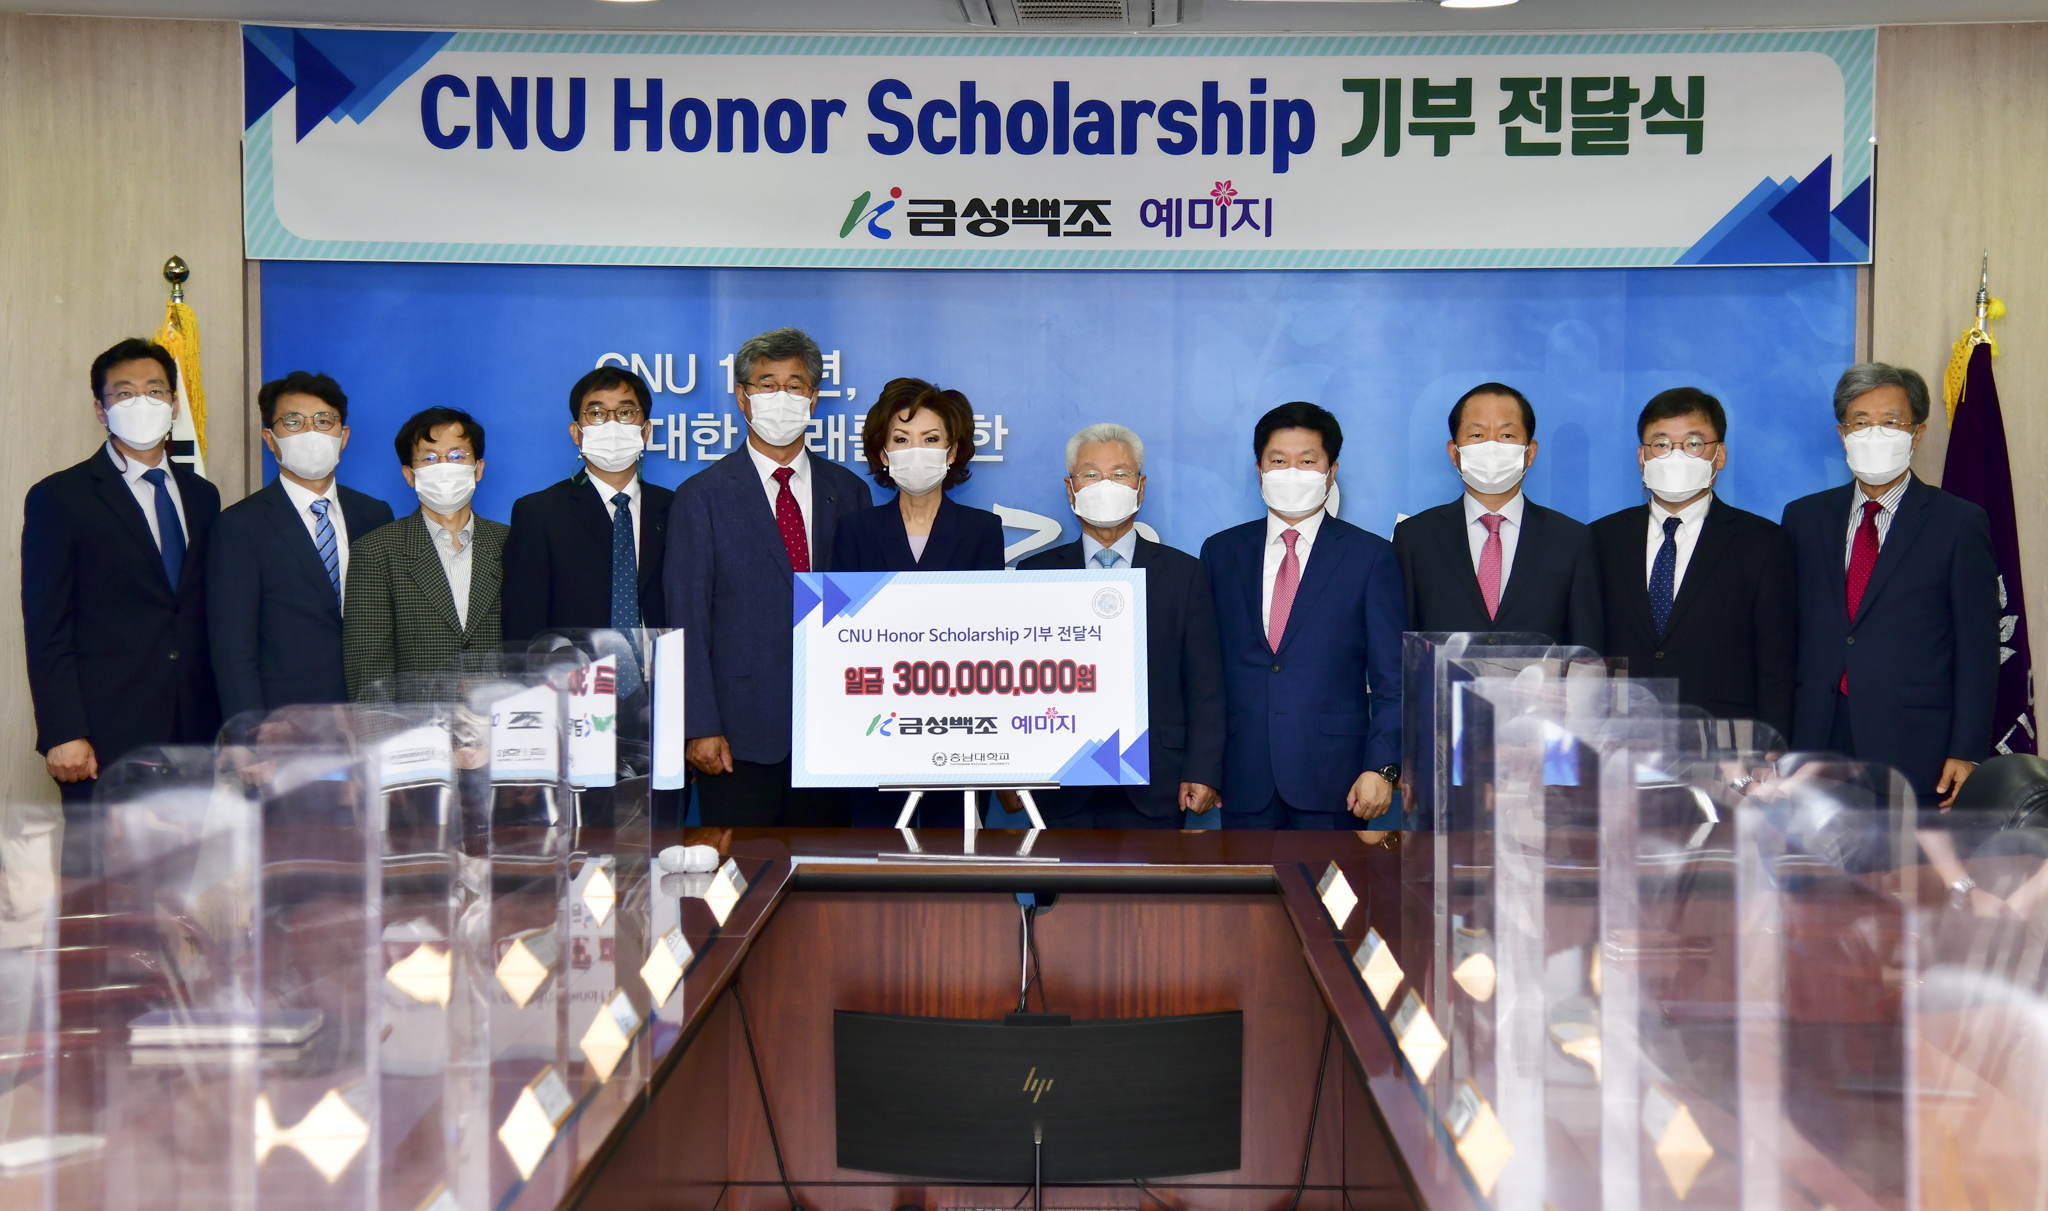 금성백조주택 정성욱 회장, ‘CNU Honor Scholarship’ 장학기금 3억원 기부 사진